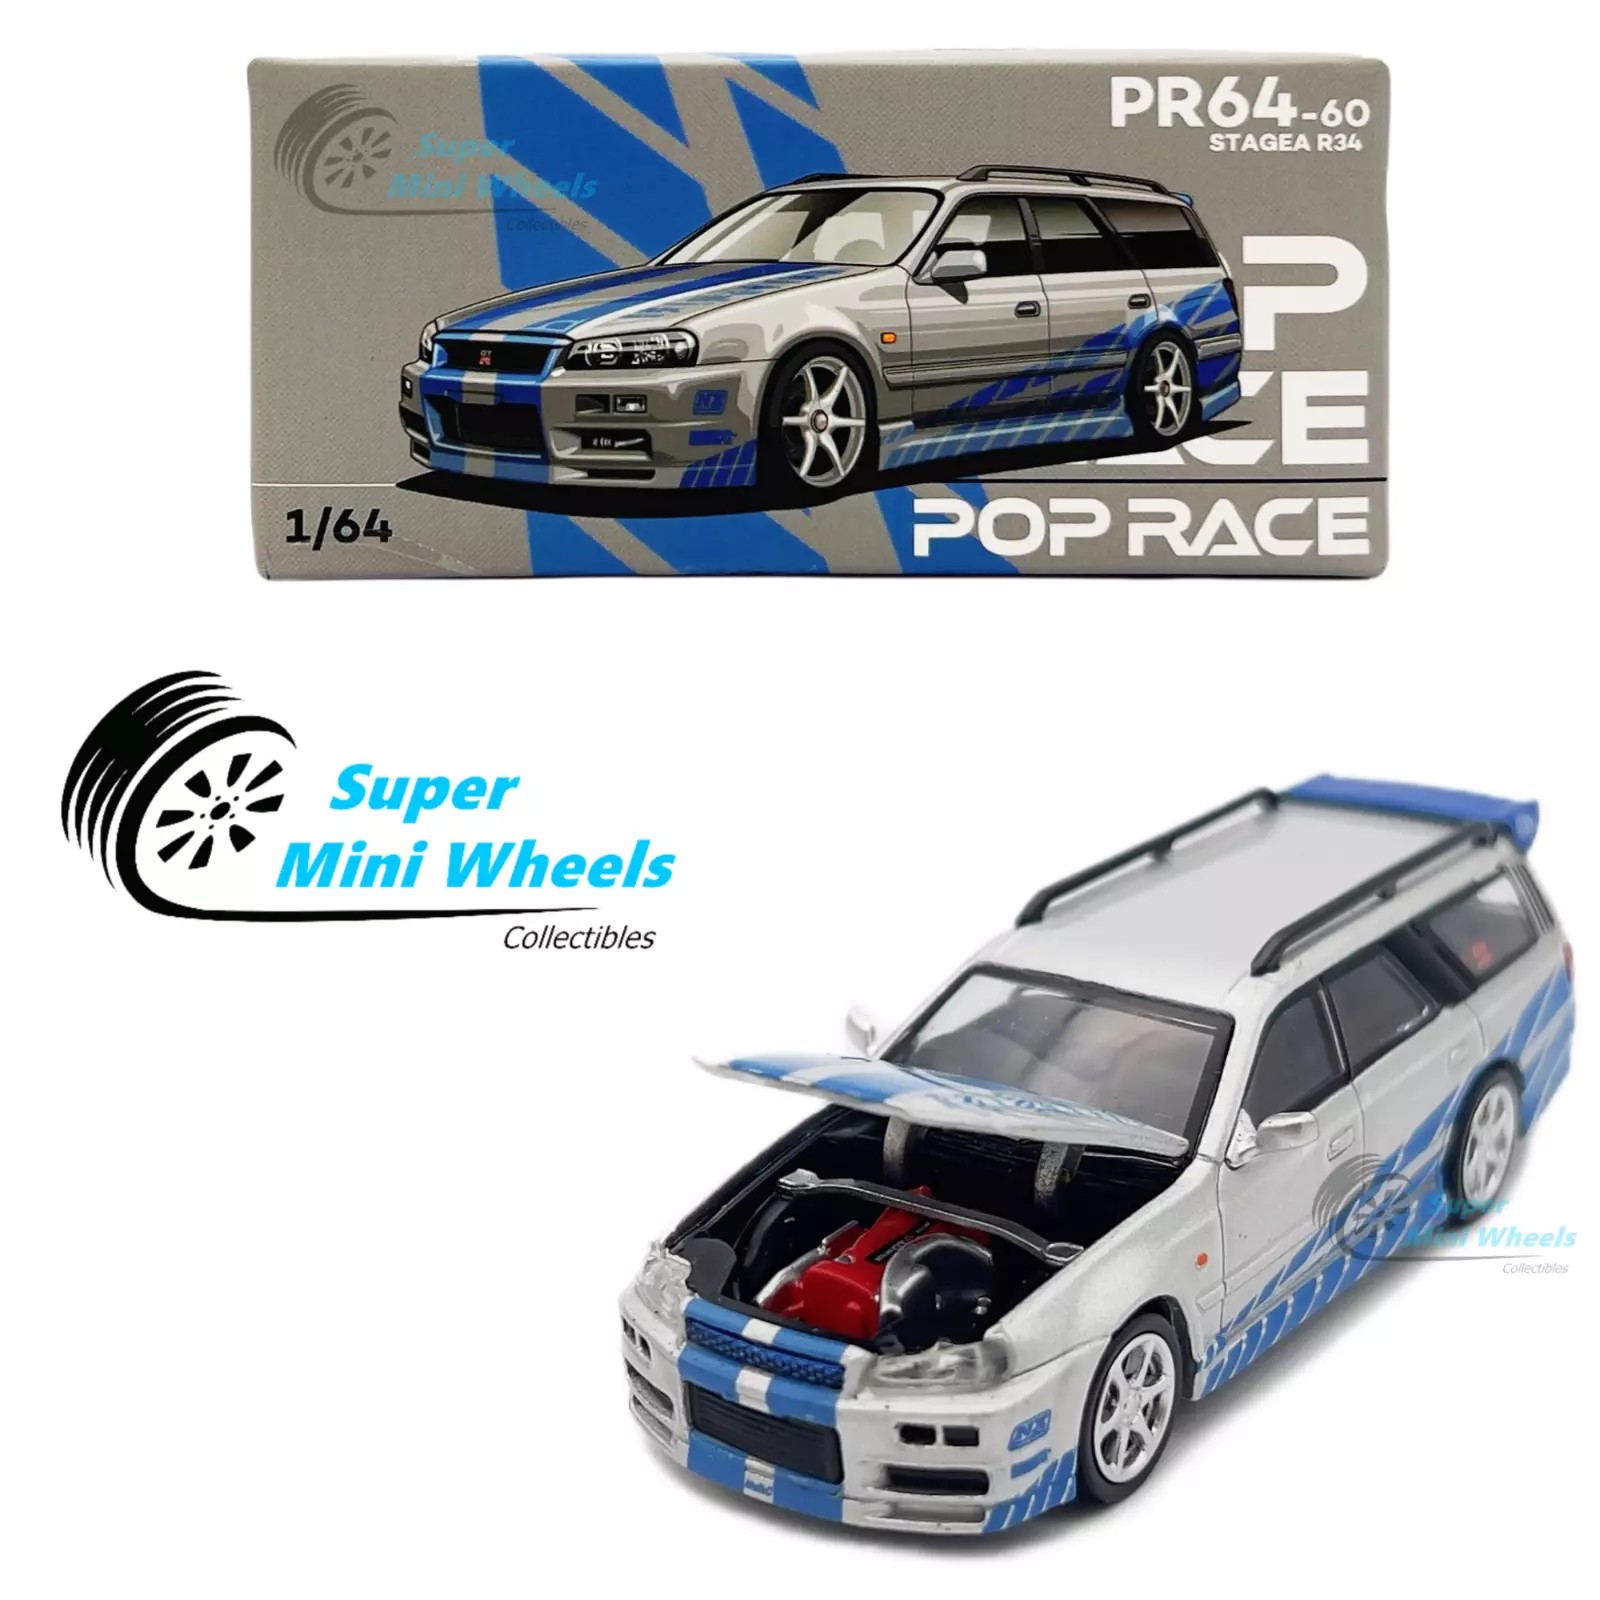 Pop Race 1/64 Nissan Stagea R34 PR64-60 Blue / Silver